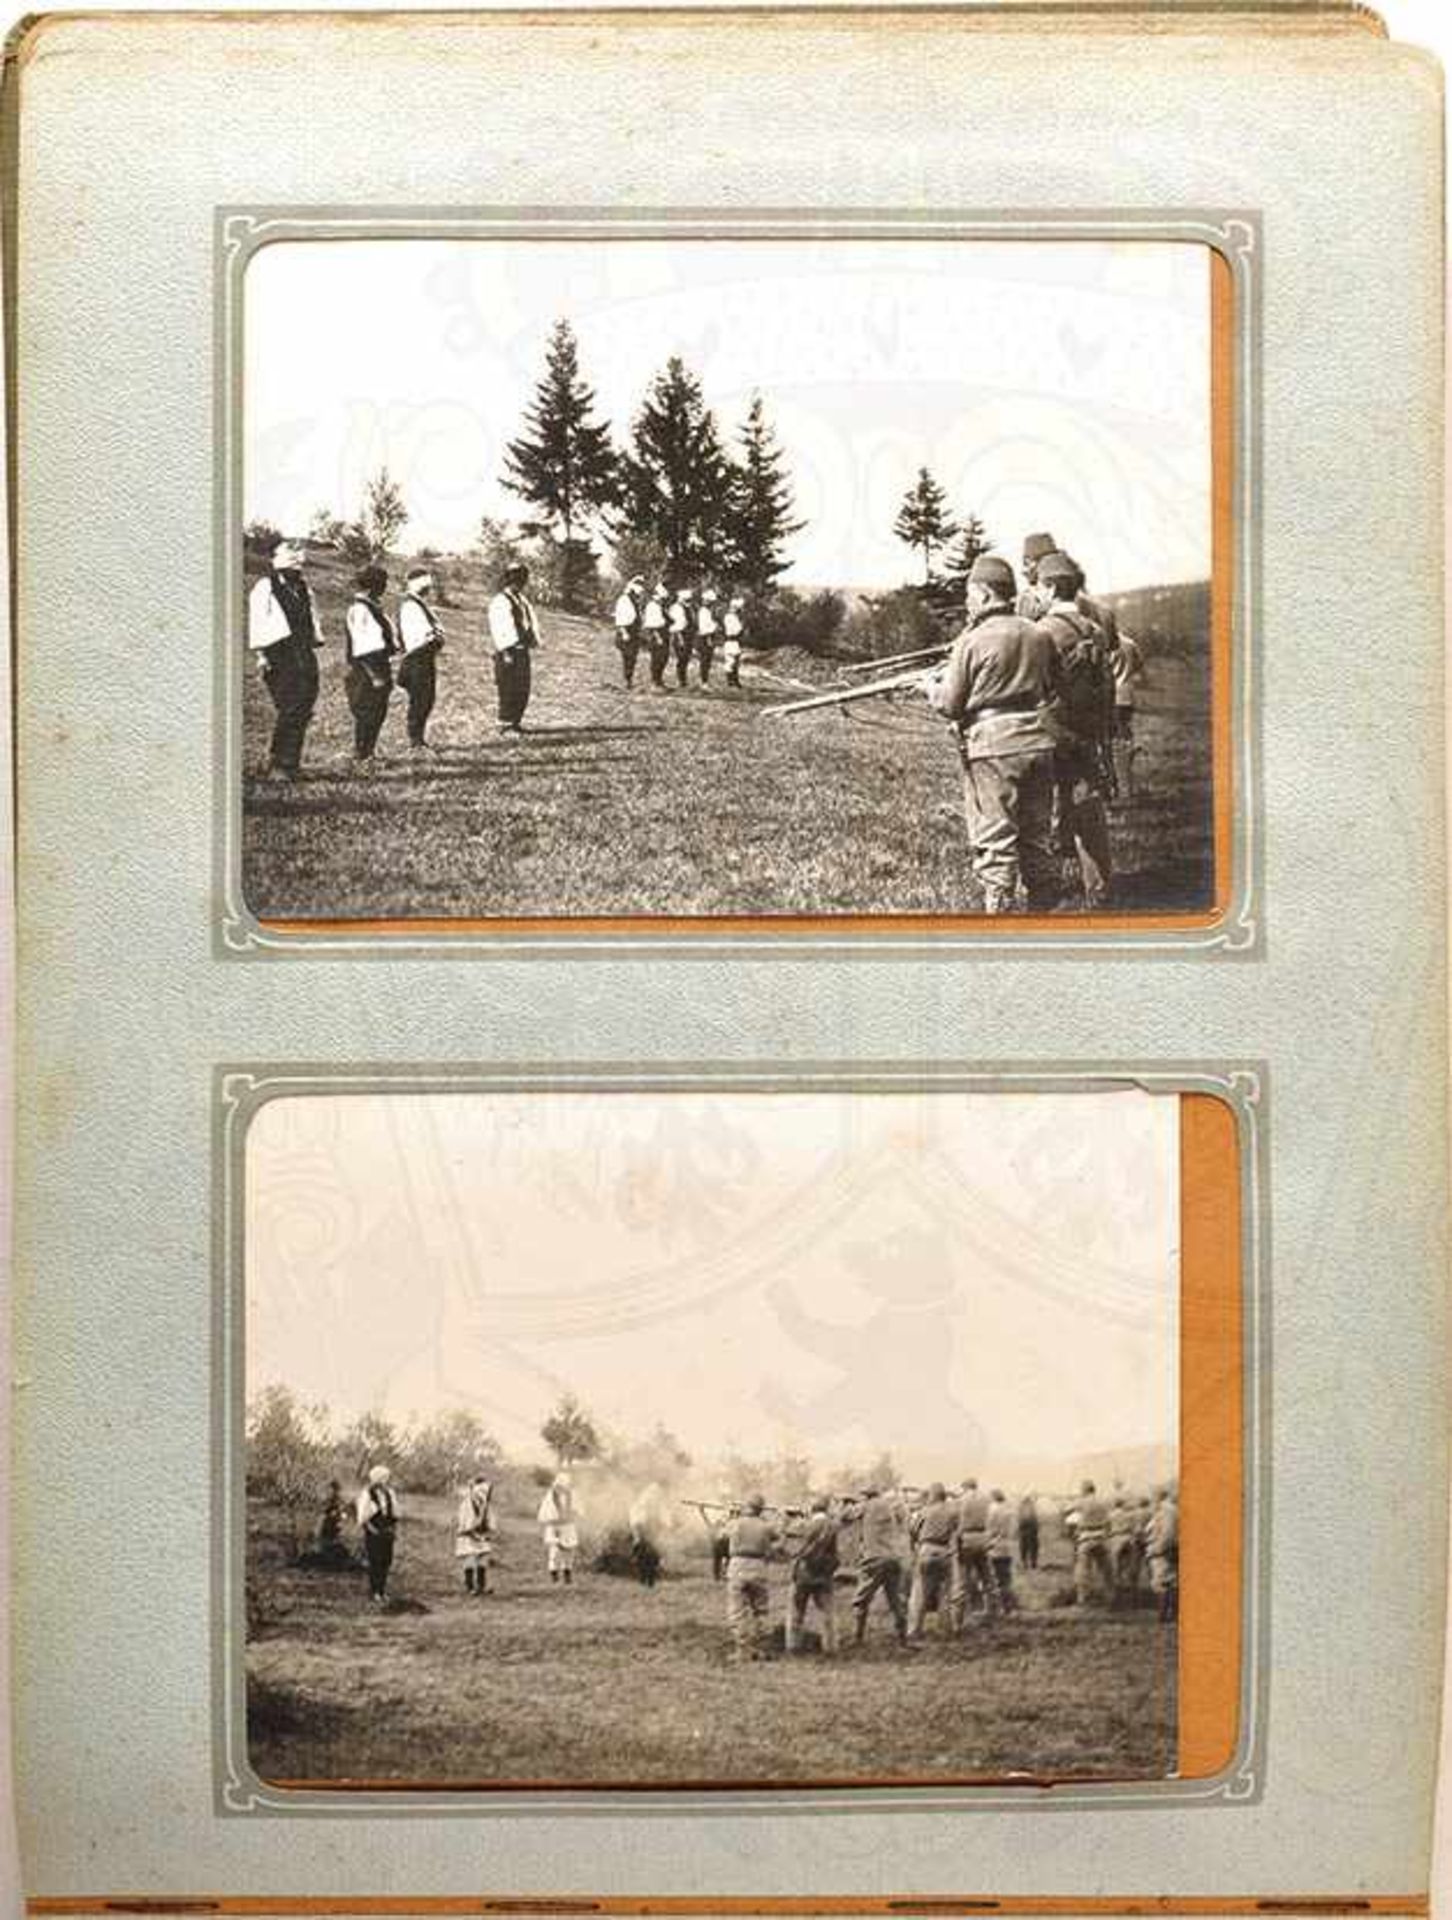 FOTOALBUM ANNEXION BOSNIEN, 128 gesteckten Fotos, tls. A 5, dabei Erzherzog Friedrich v. - Bild 3 aus 4